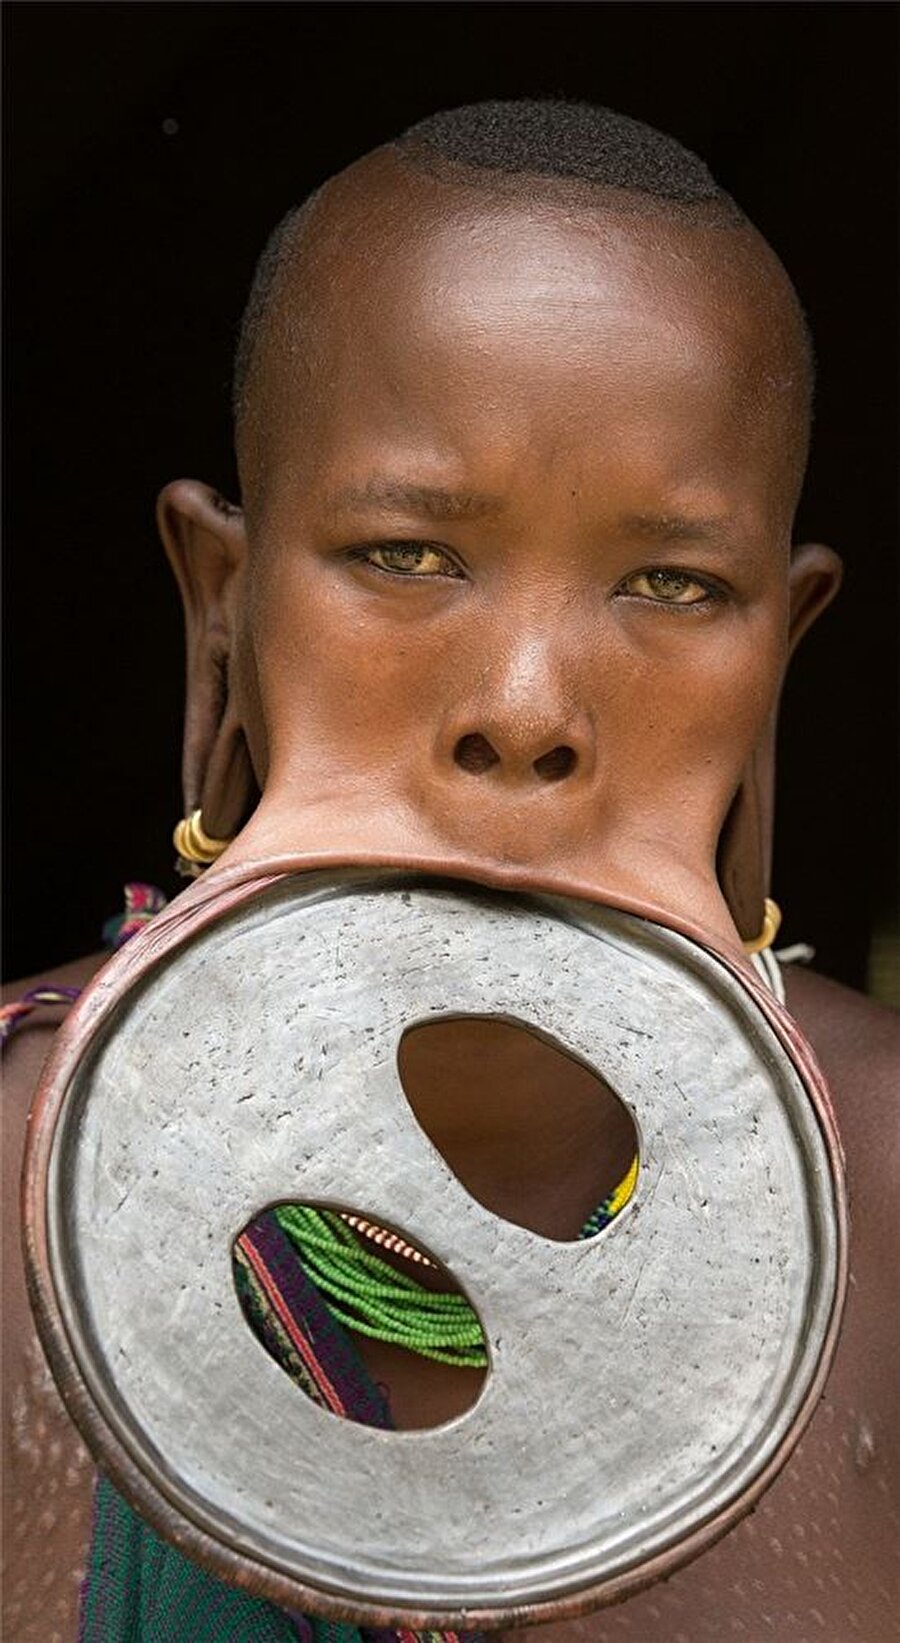 Ahşap disk
Güney Afrika'da çoğunlukla Mursi, Surma ve Sara kabilelerinde uygulanan dudağa ahşap disk yerleştirme, daha çok 15-16 yaşına gelen kızlarda görülüyor. Anneleri tarafından dudakları kesilen kızlar anlamı pek bilinmeyen ahşap disklerle ağızlarını büyütüyor. 

Kimileri güzellik amacıyla taktığını söylerken kimileri "Başlık parası fazla olan kadının dudağındaki disk büyük olur" diyor. Ahşap disklerin ayrıca köle ticaretini engellemek amacıyla uygulandığı düşünülüyor.